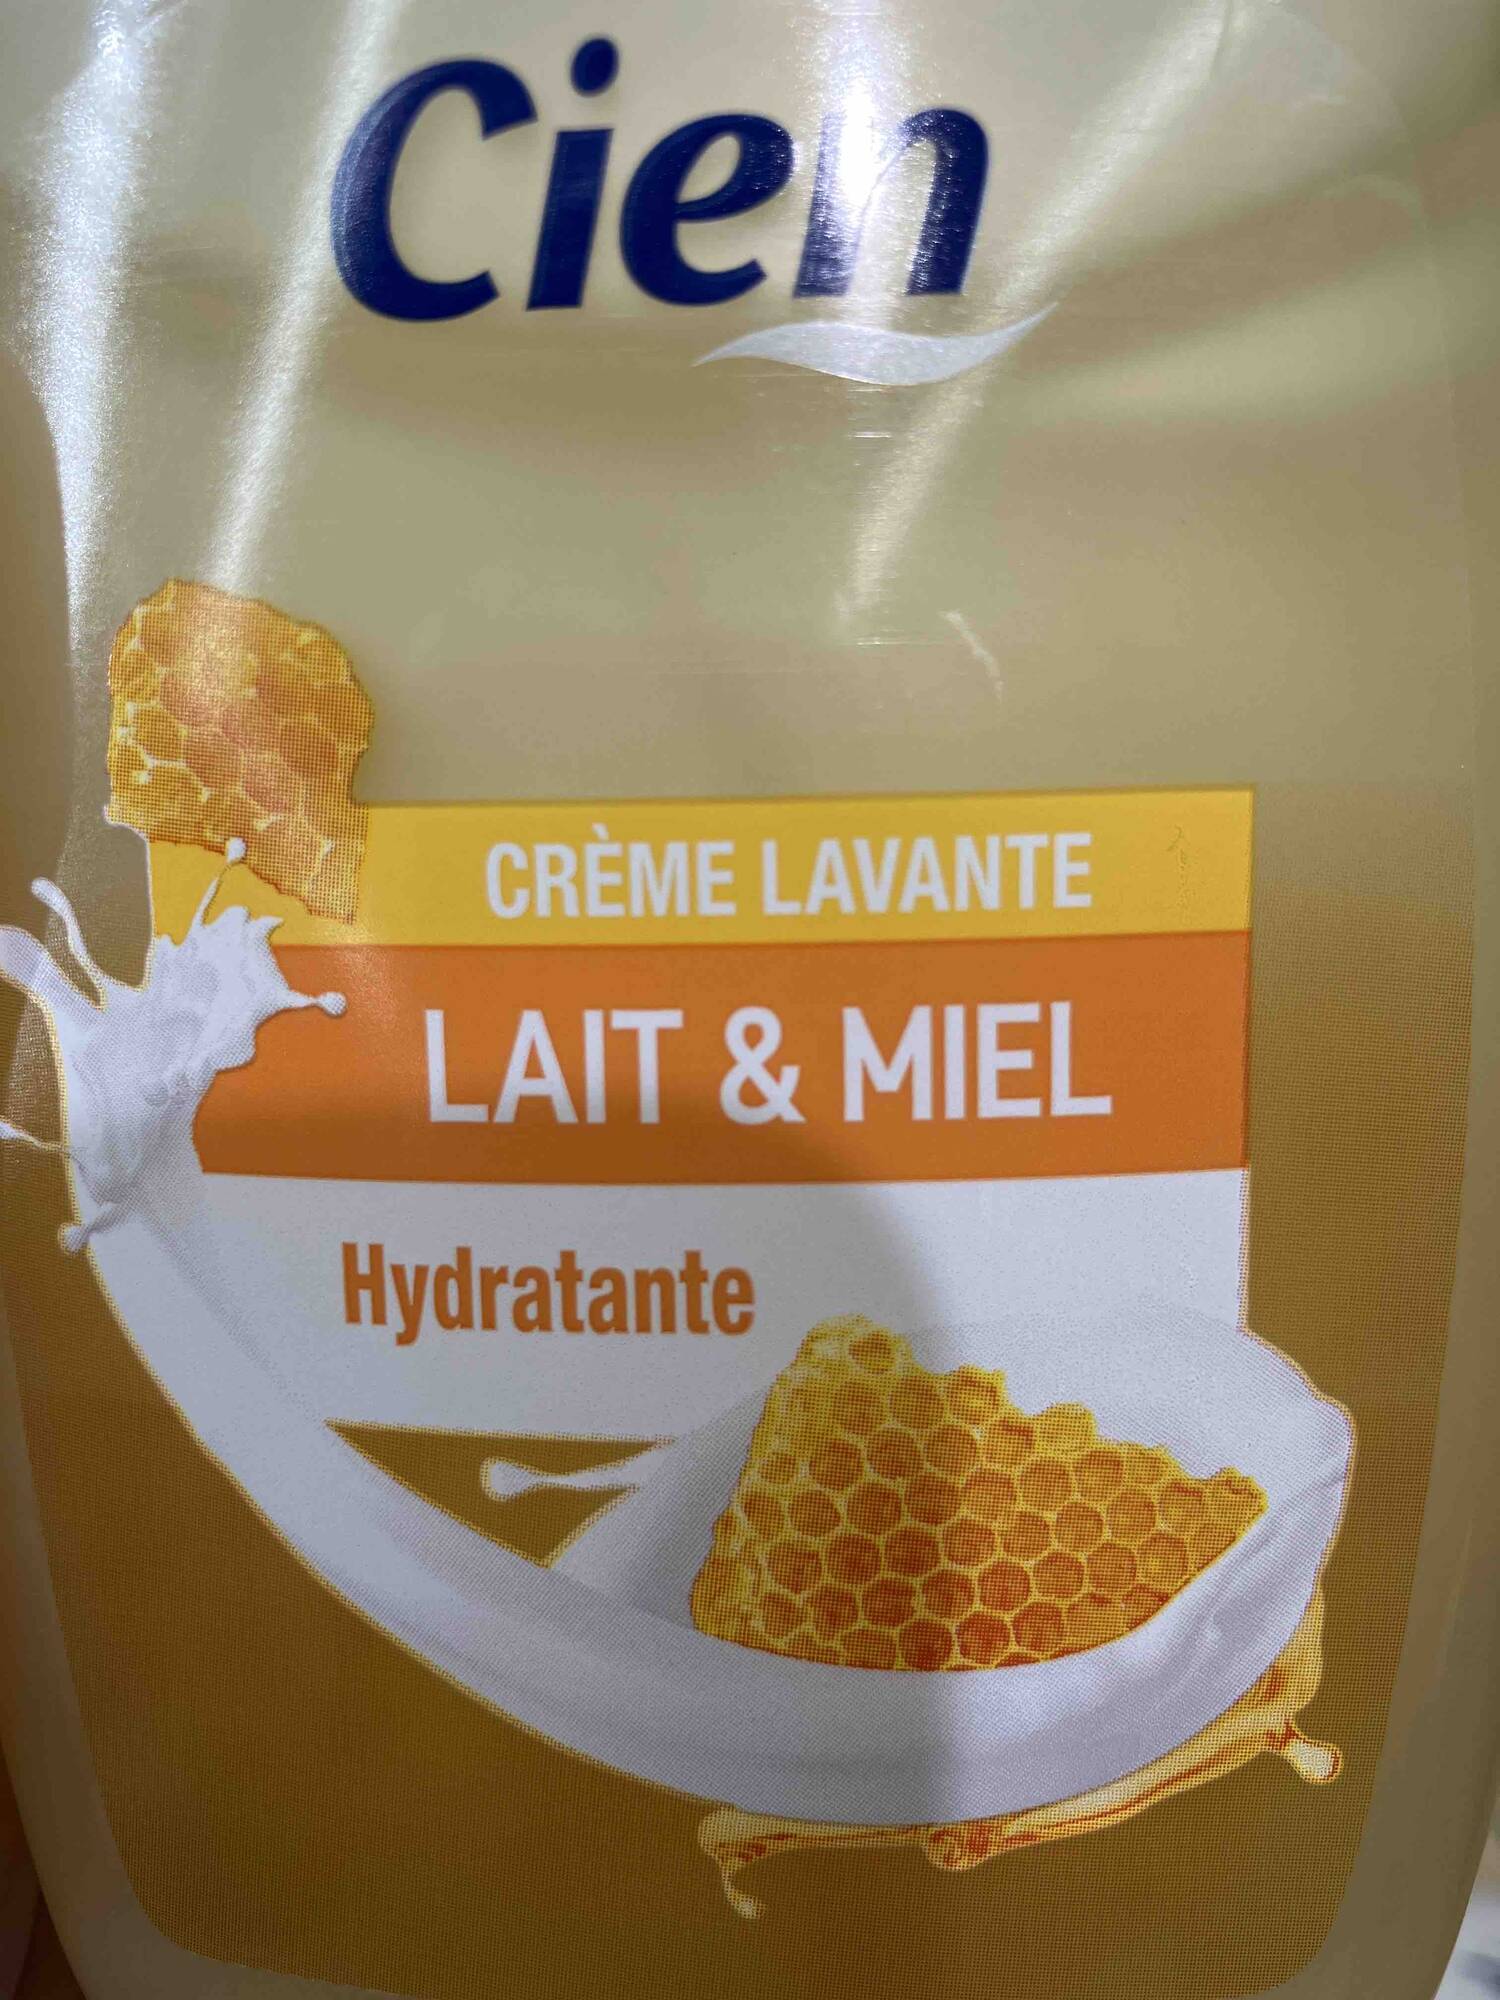 CIEN - Lait & miel - Crème lavante hydratante